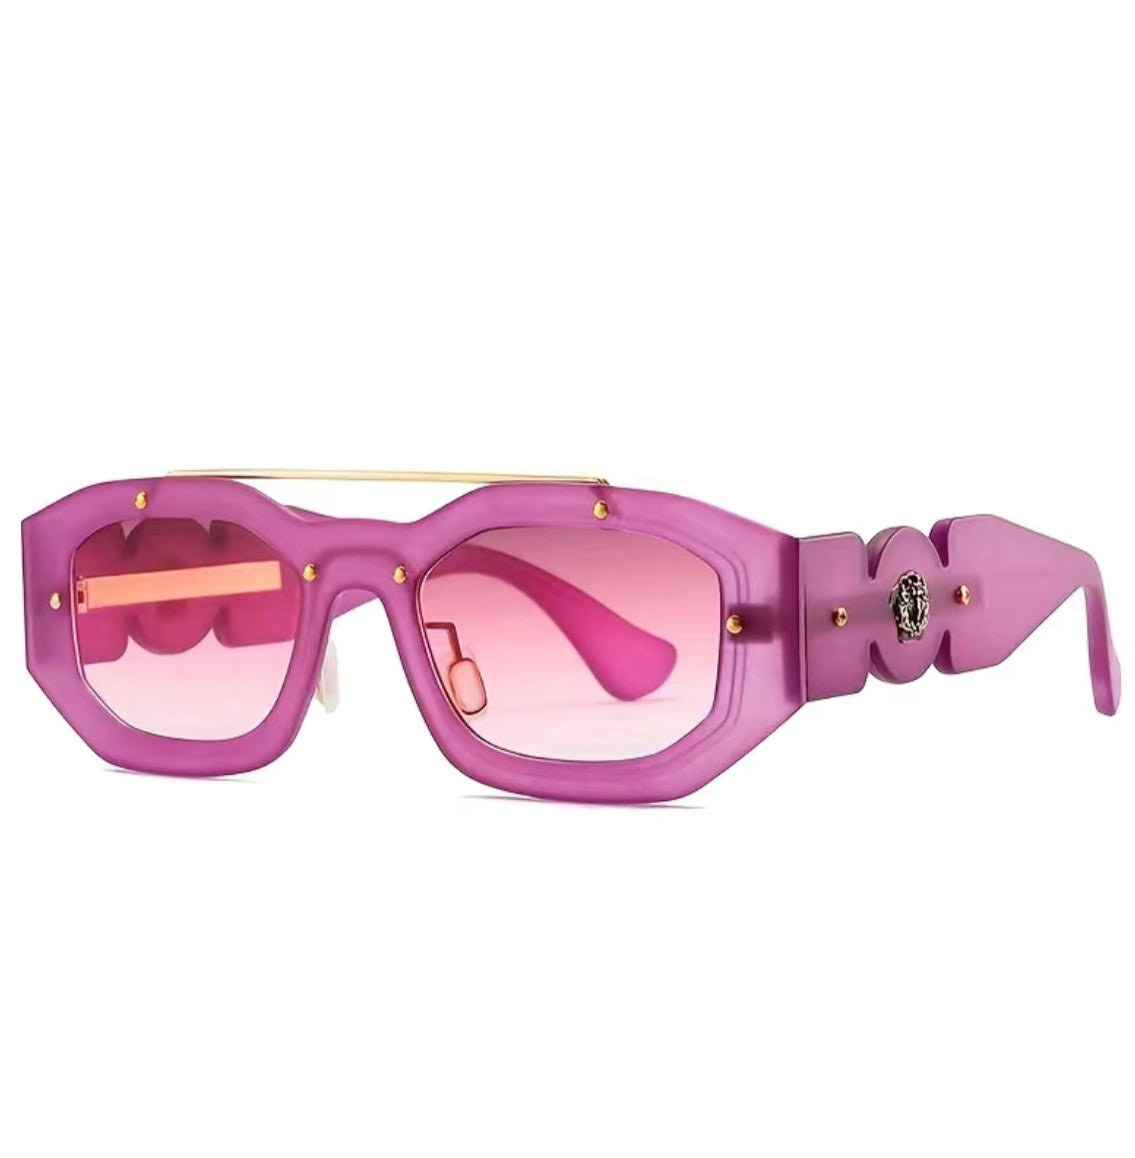 Dark Fuchsia / Miami Nights Sunglasses - Pretty Prissy Pieces sunglasses